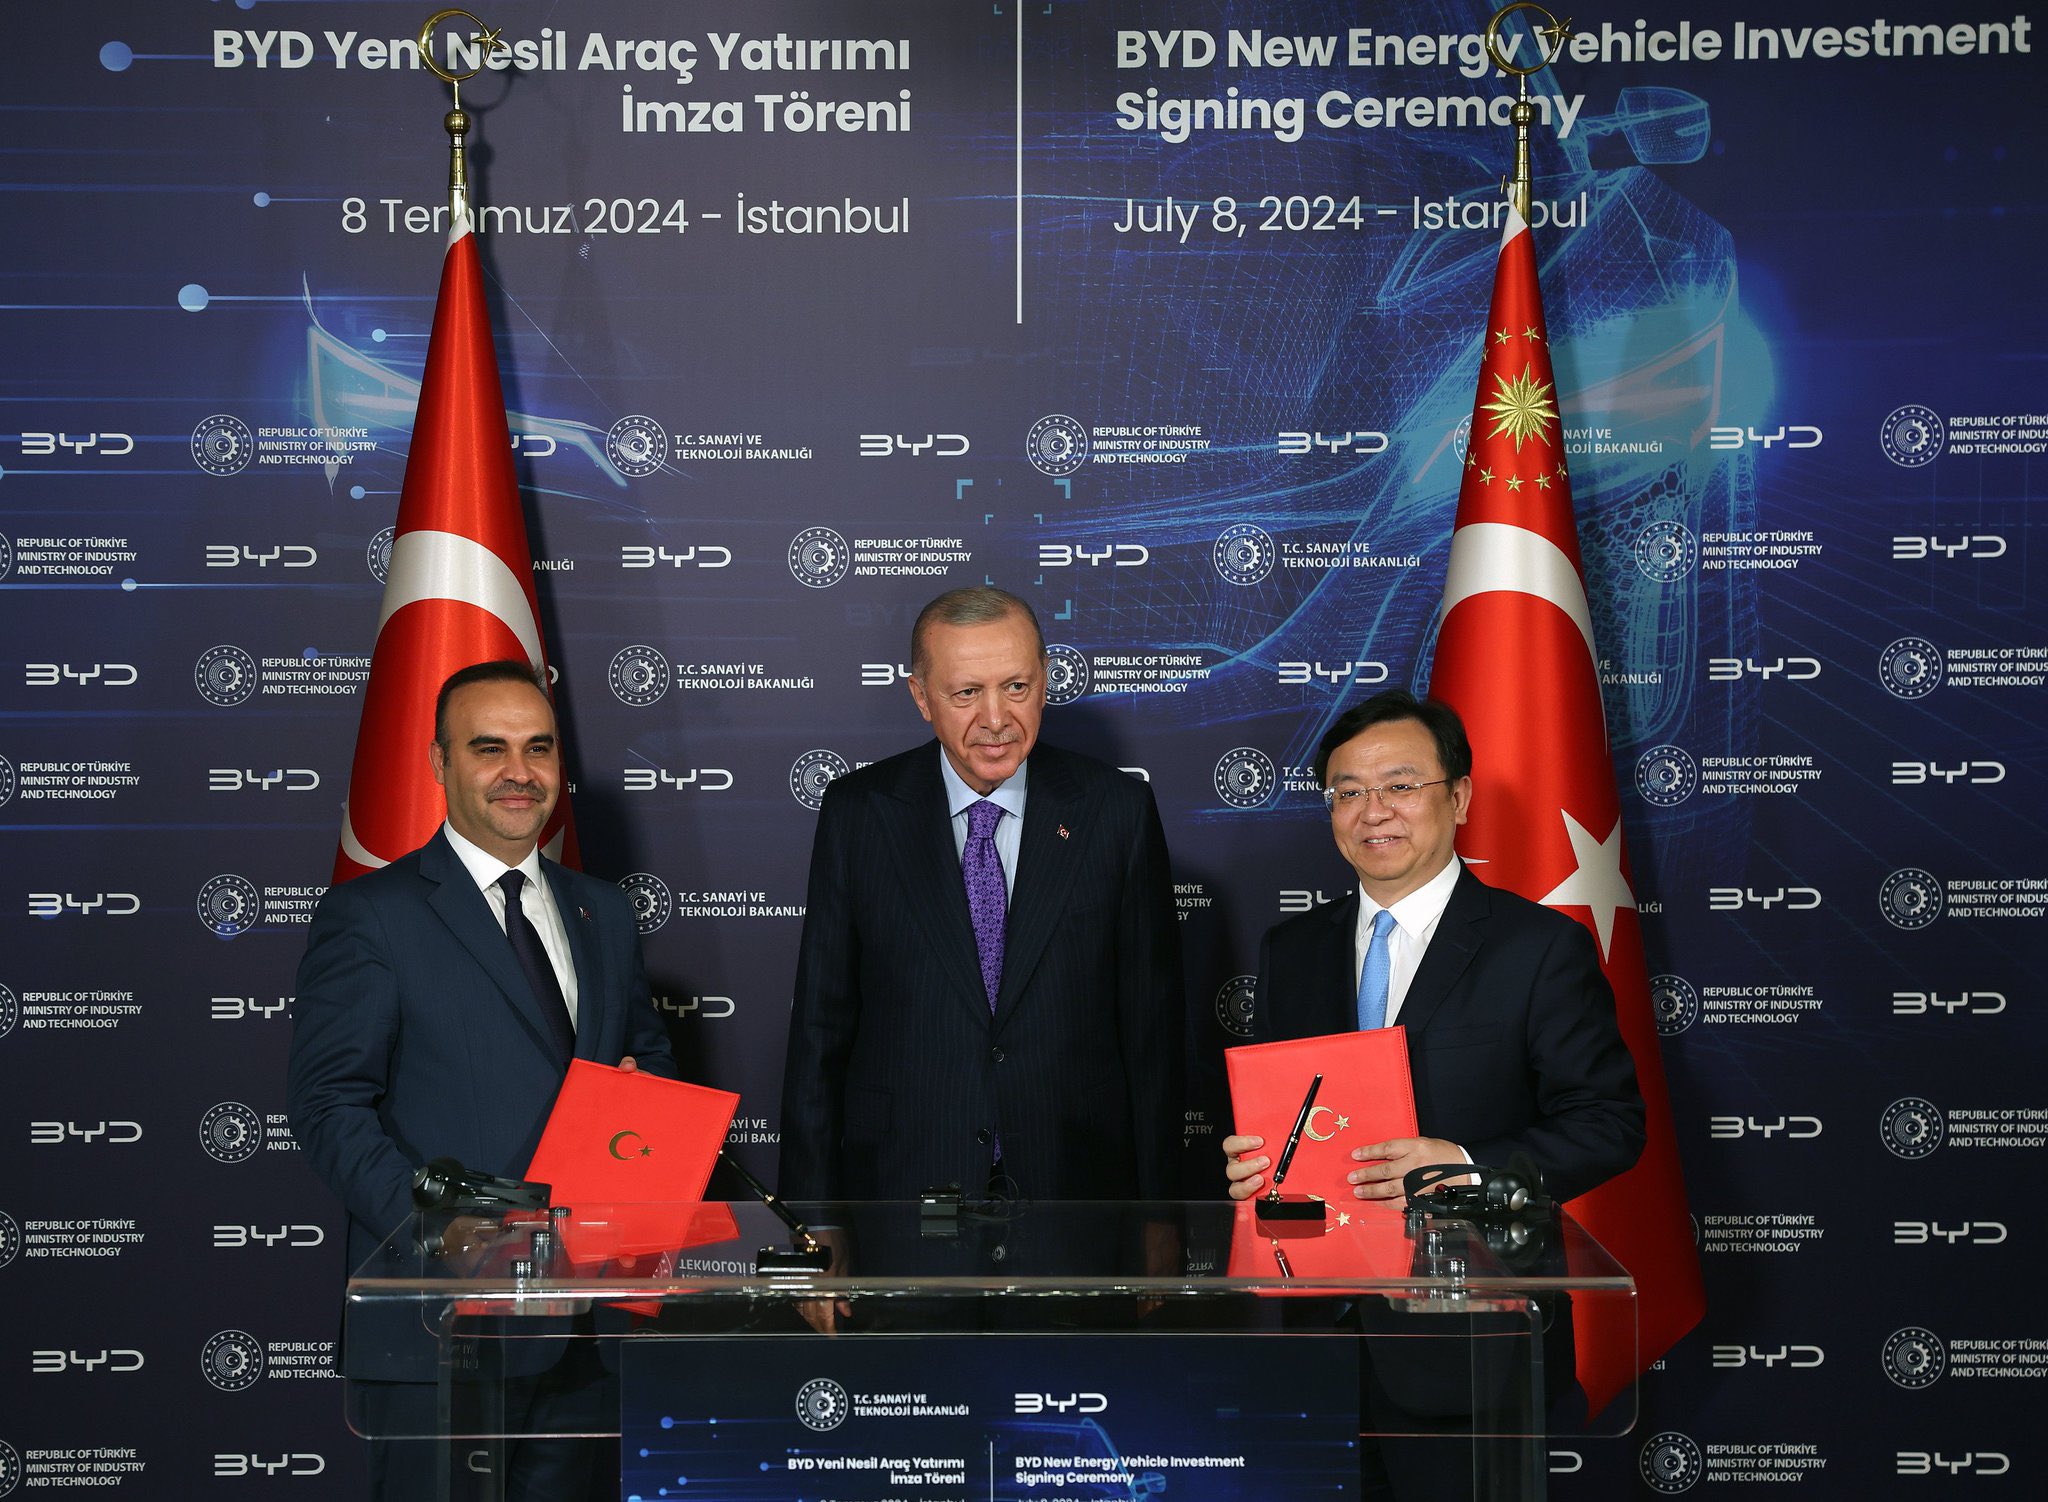 Τουρκία: Έκλεισε το μεγάλο deal για το νέο εργοστάσιο EV της κινεζικής BYD